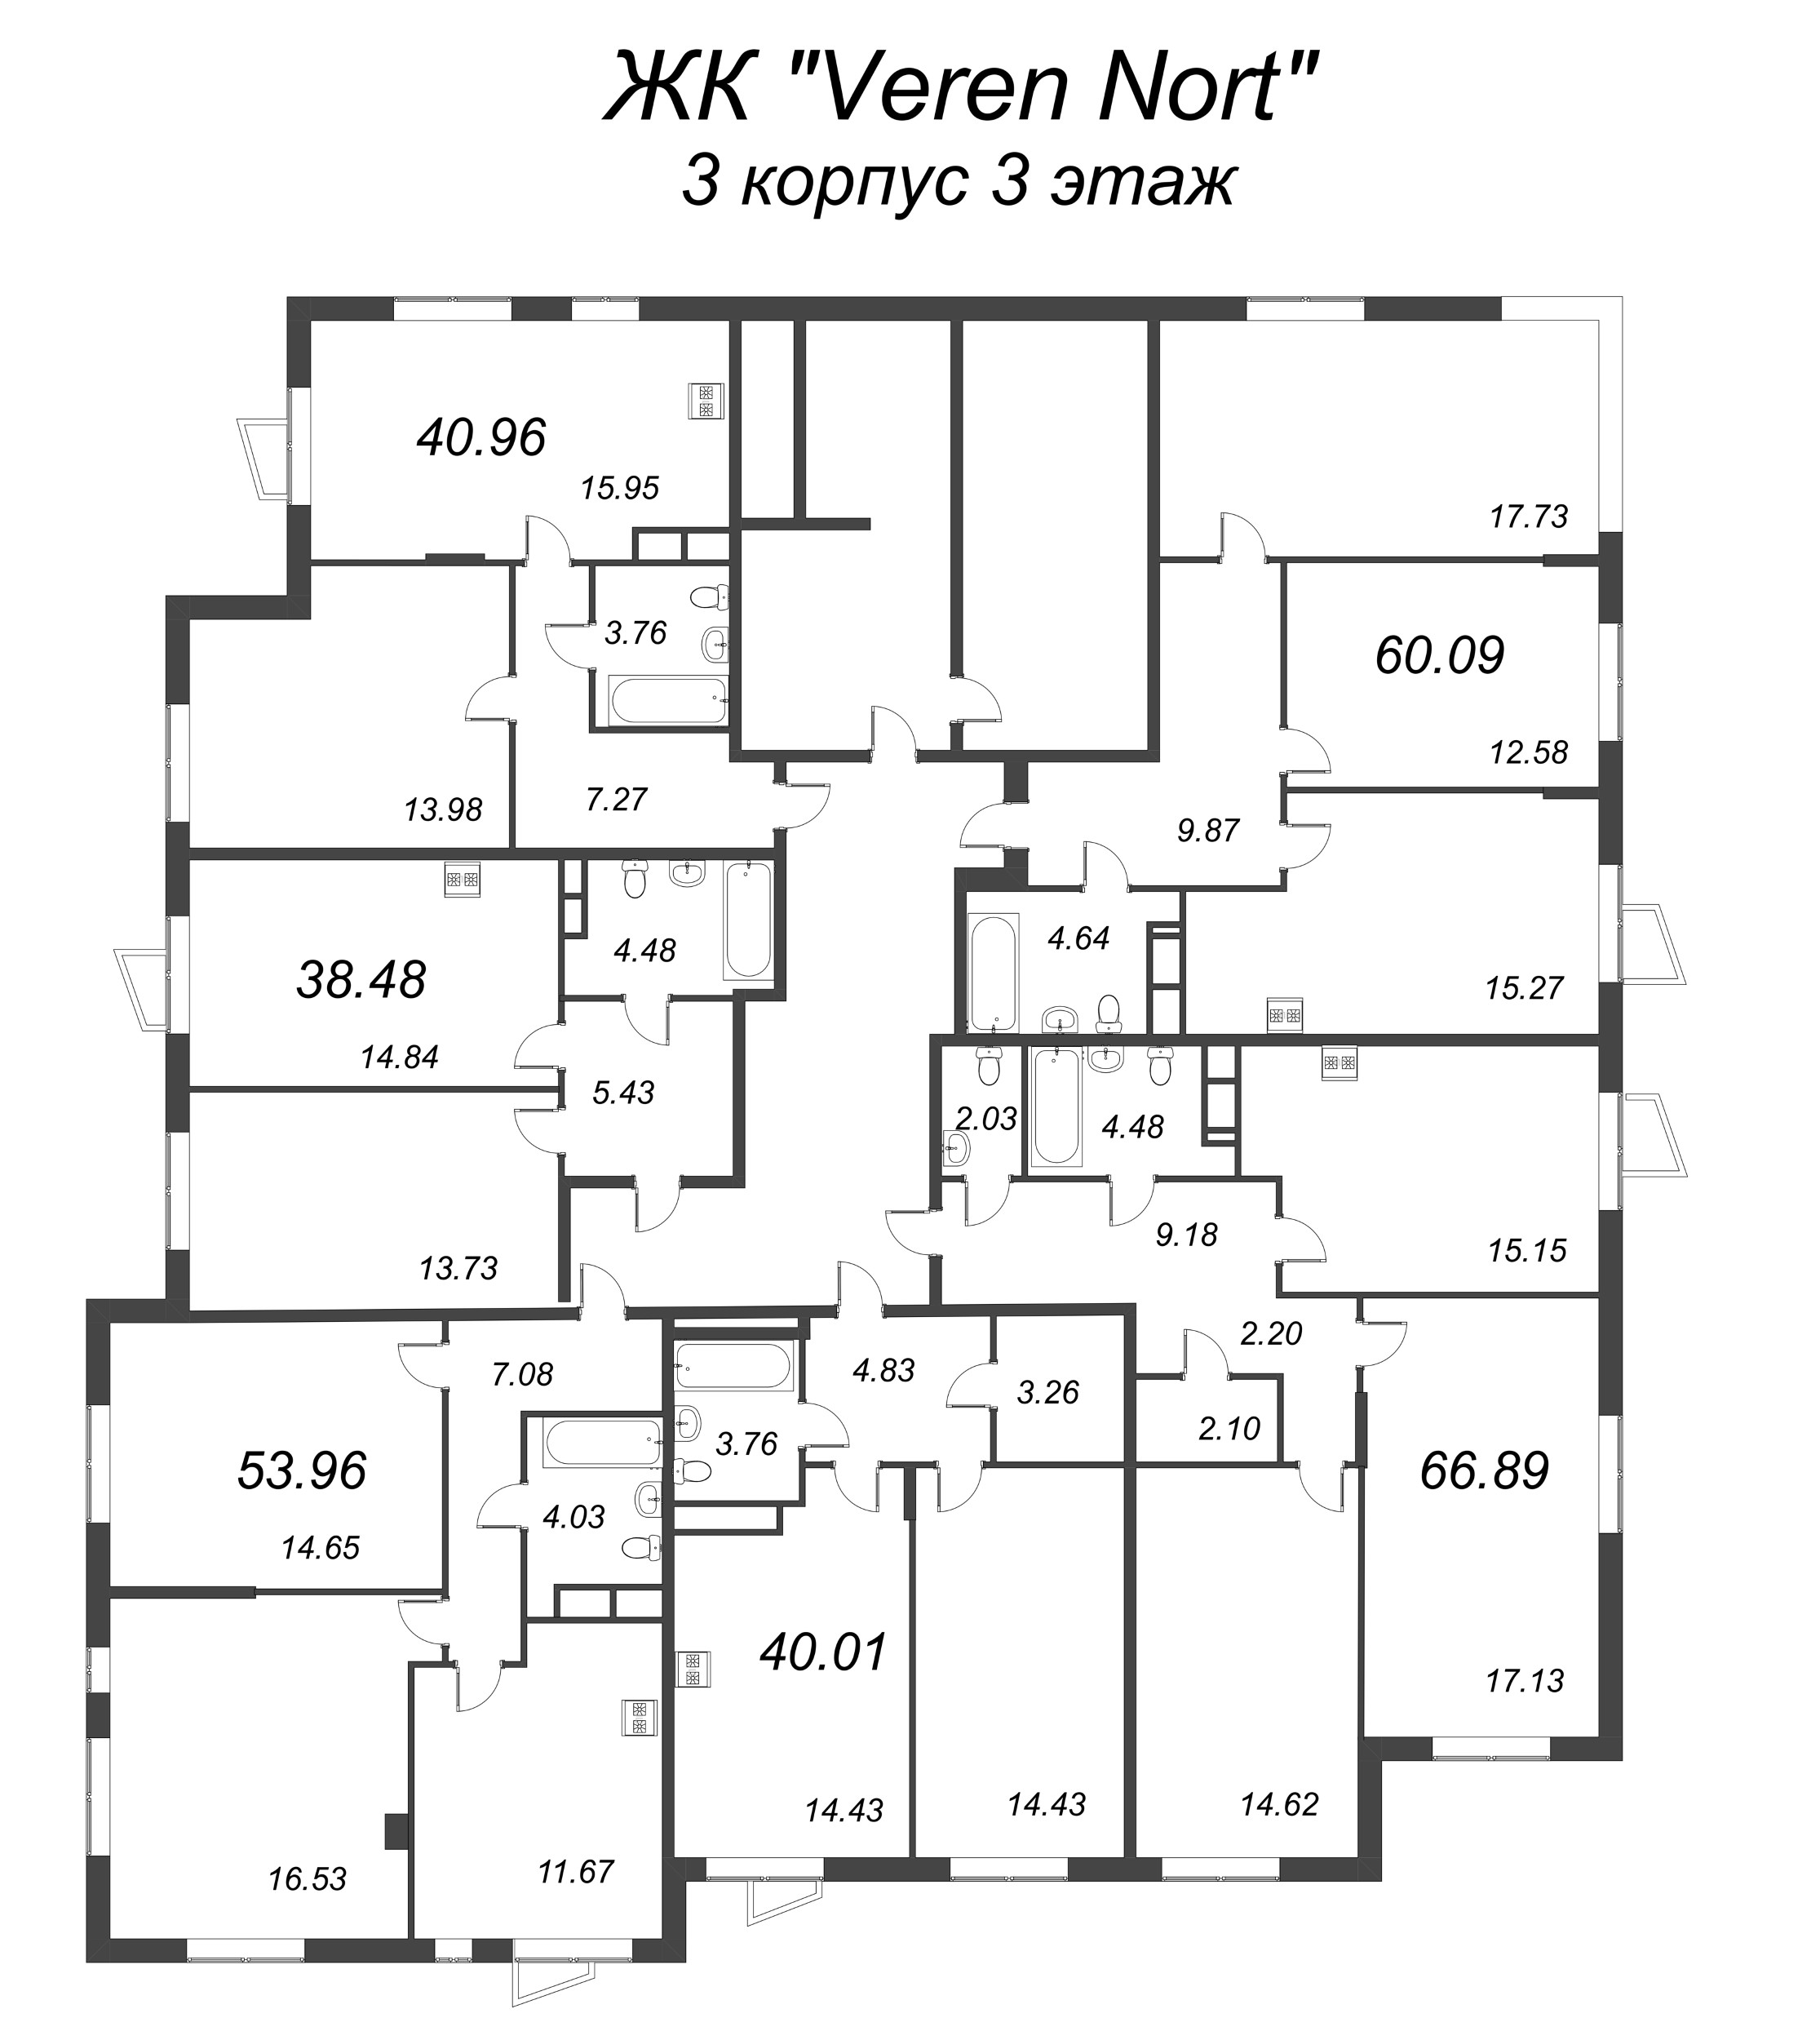 3-комнатная (Евро) квартира, 53.96 м² в ЖК "VEREN NORT сертолово" - планировка этажа